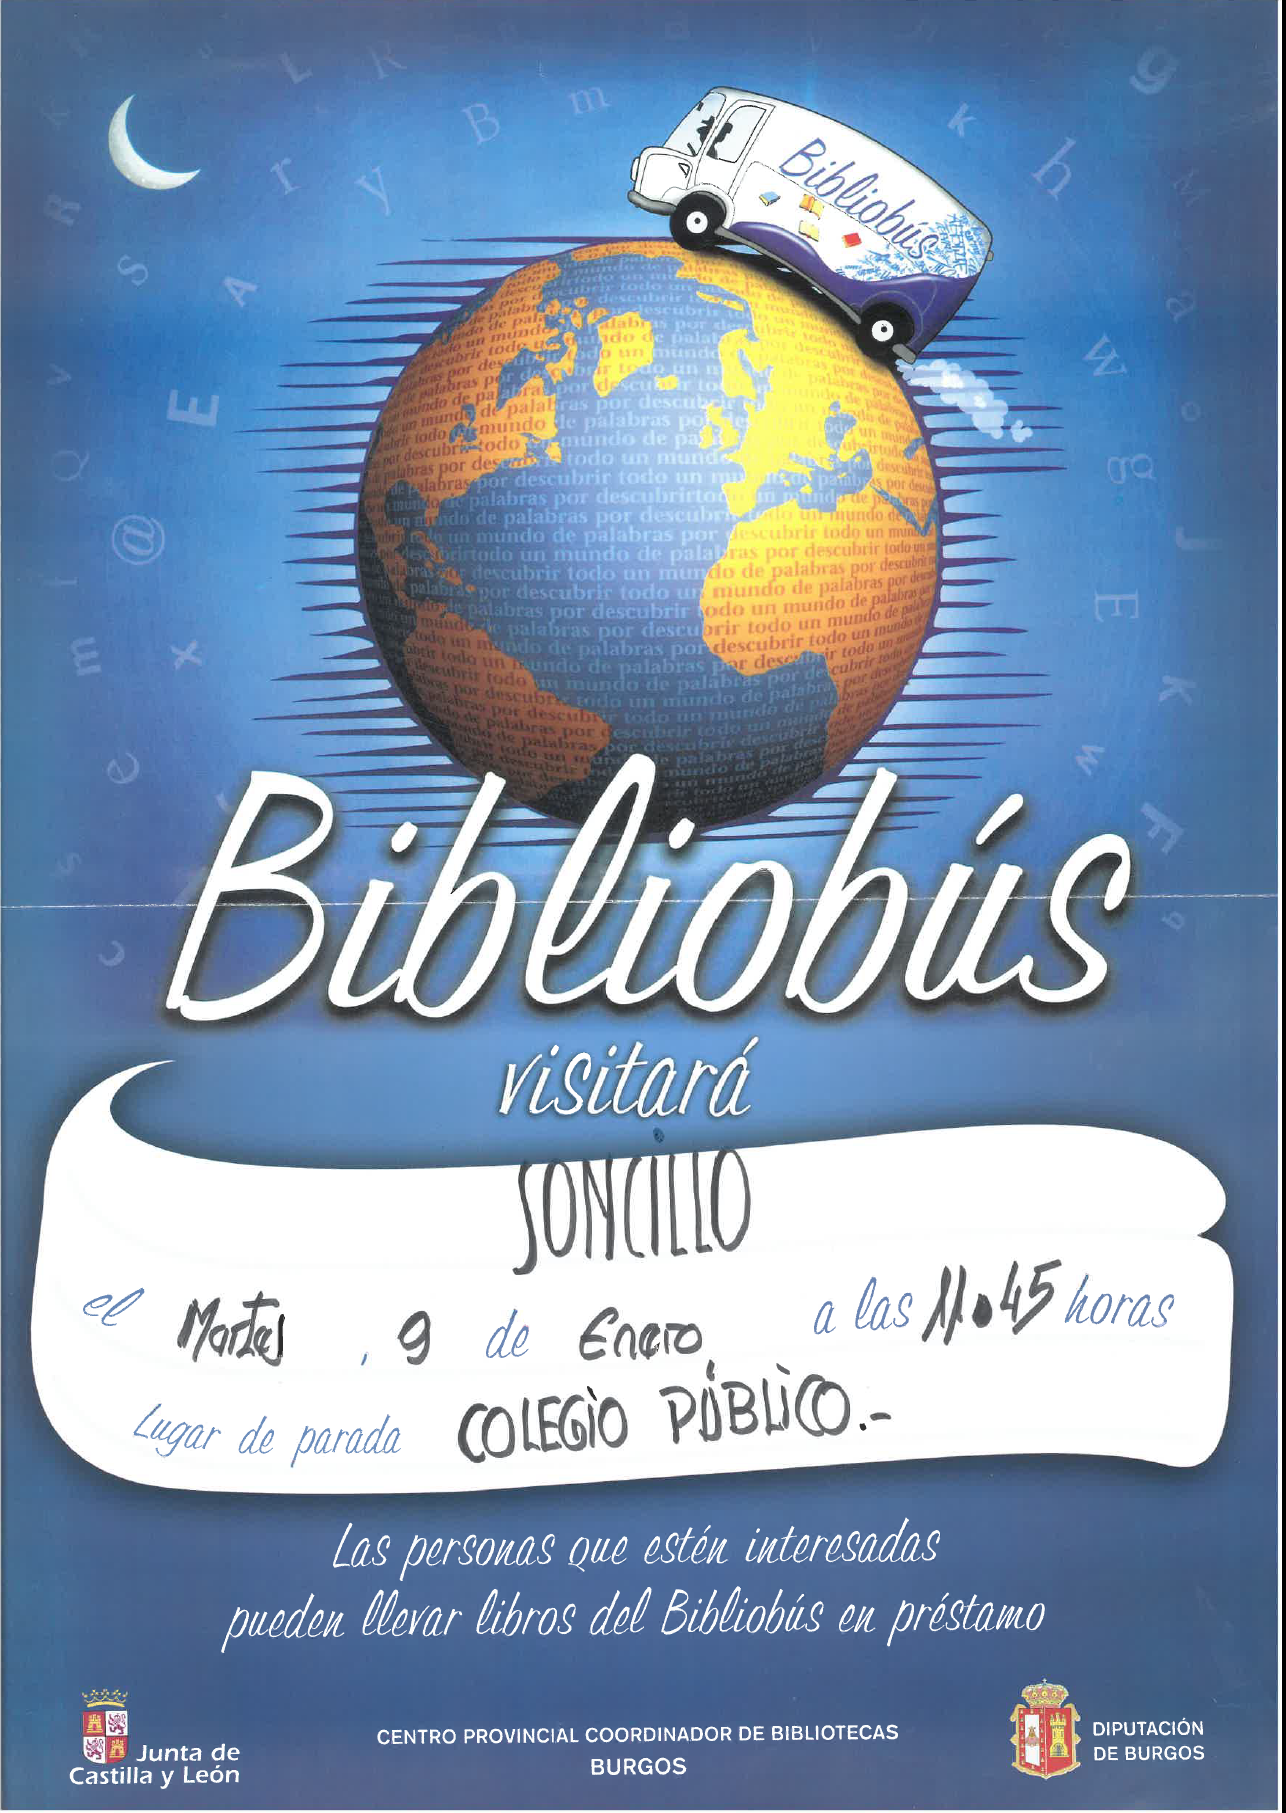 "BIBLIOBUS 09 DE ENERO"